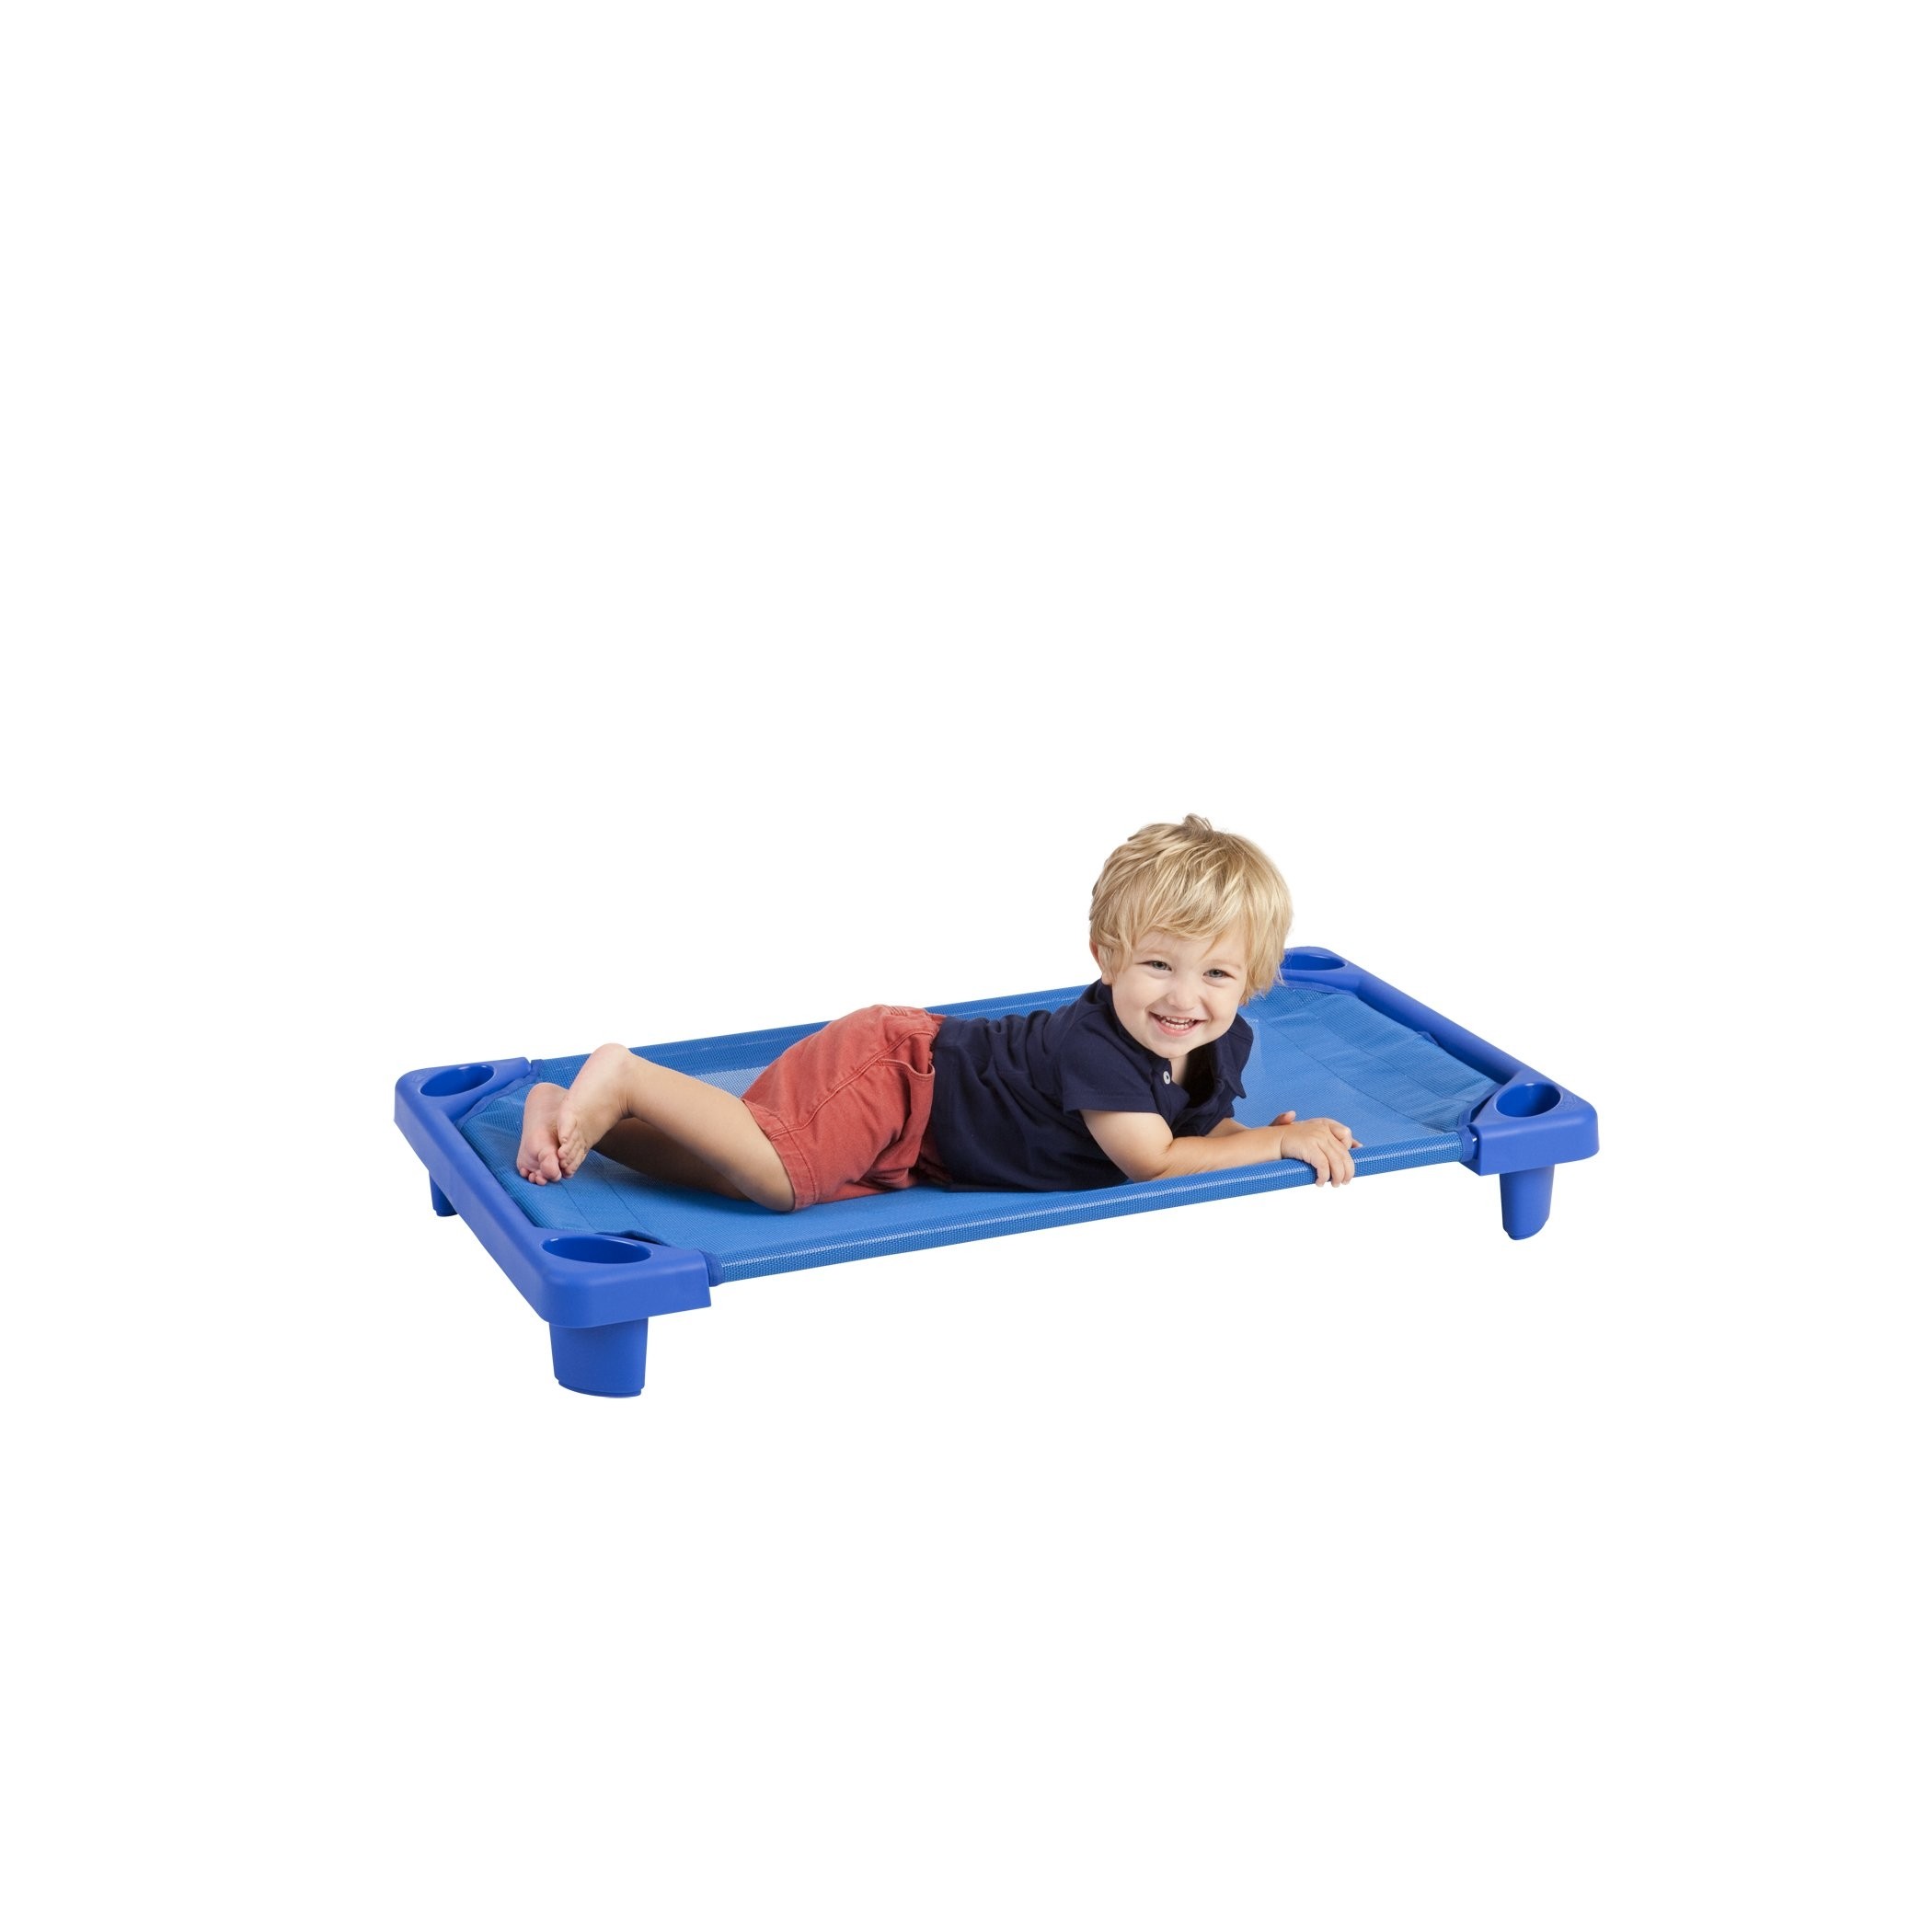 Ecr4kids streamline toddler naptime cot stackable daycare 1